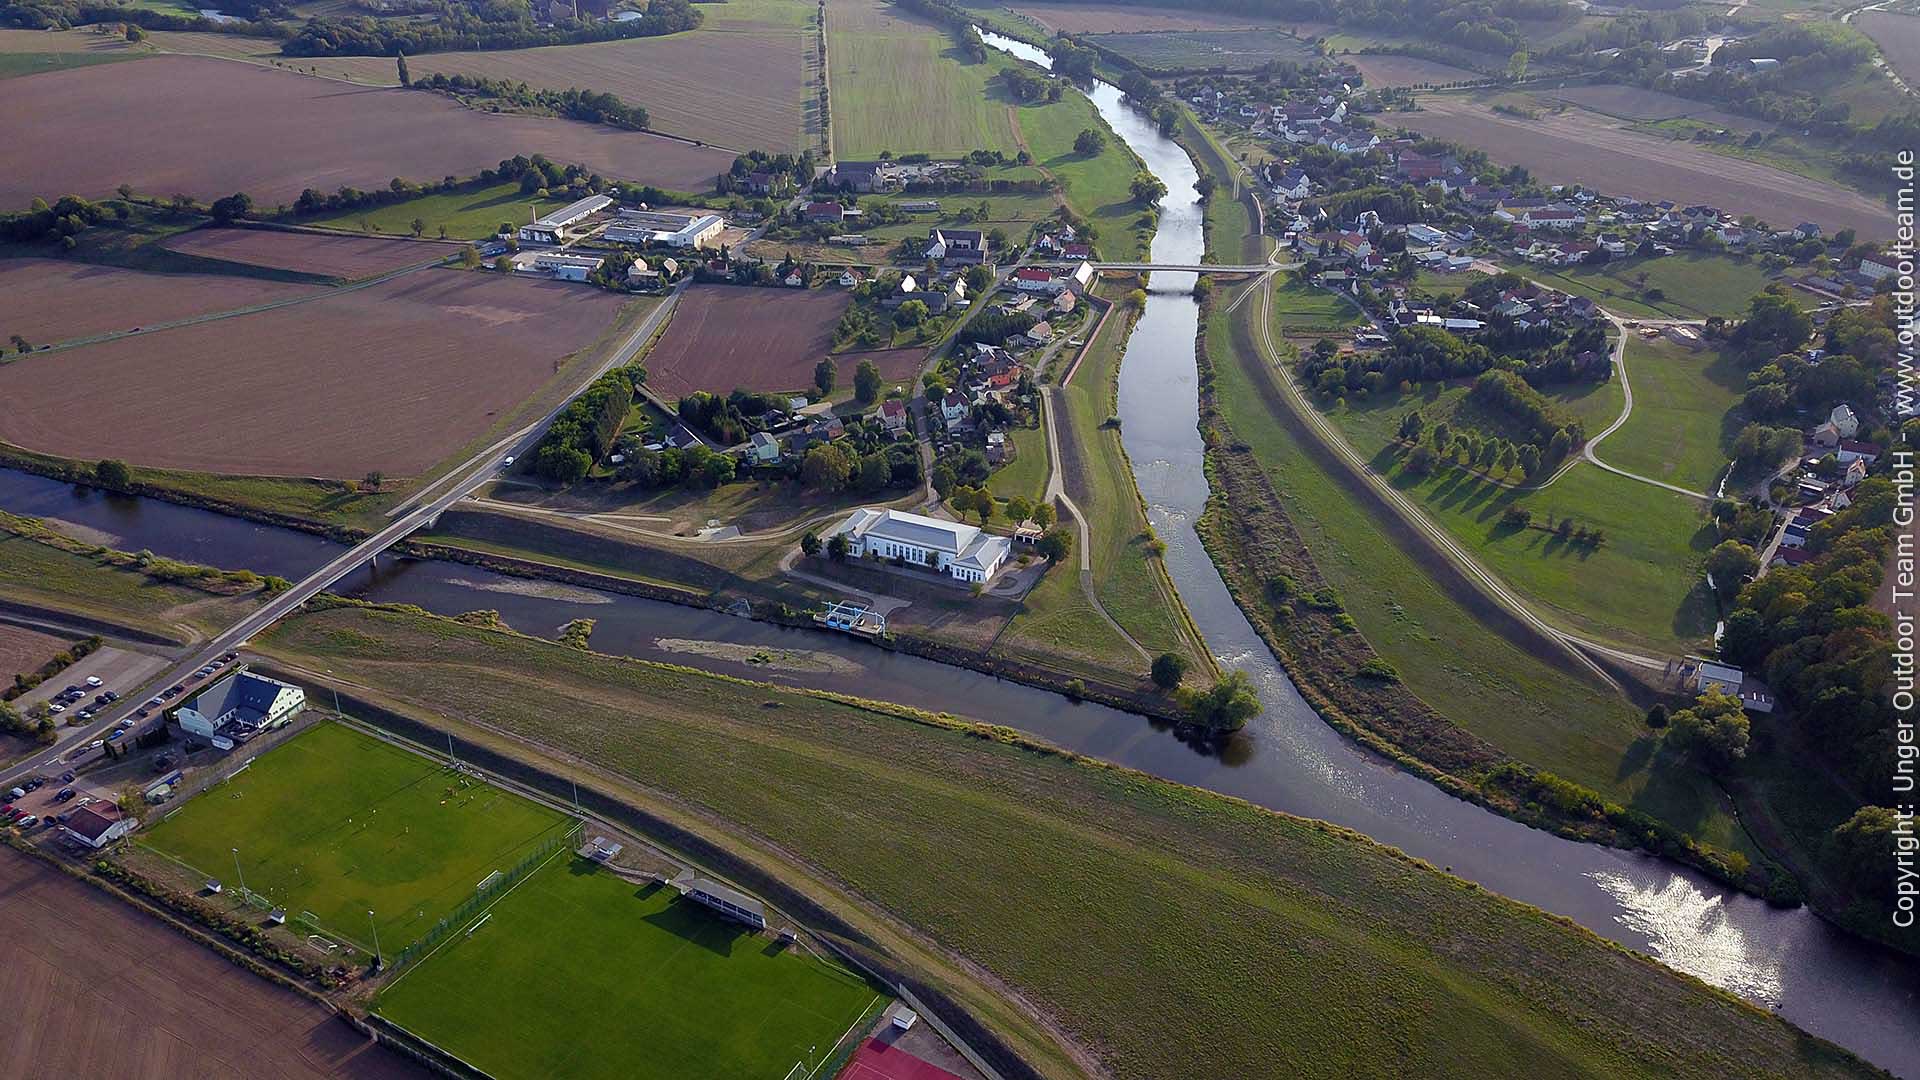 Luftbild von der Vereinigung der Freiberger Mulde (links) und Zwickauer Mulde (rechts) im Ort Sermuth.